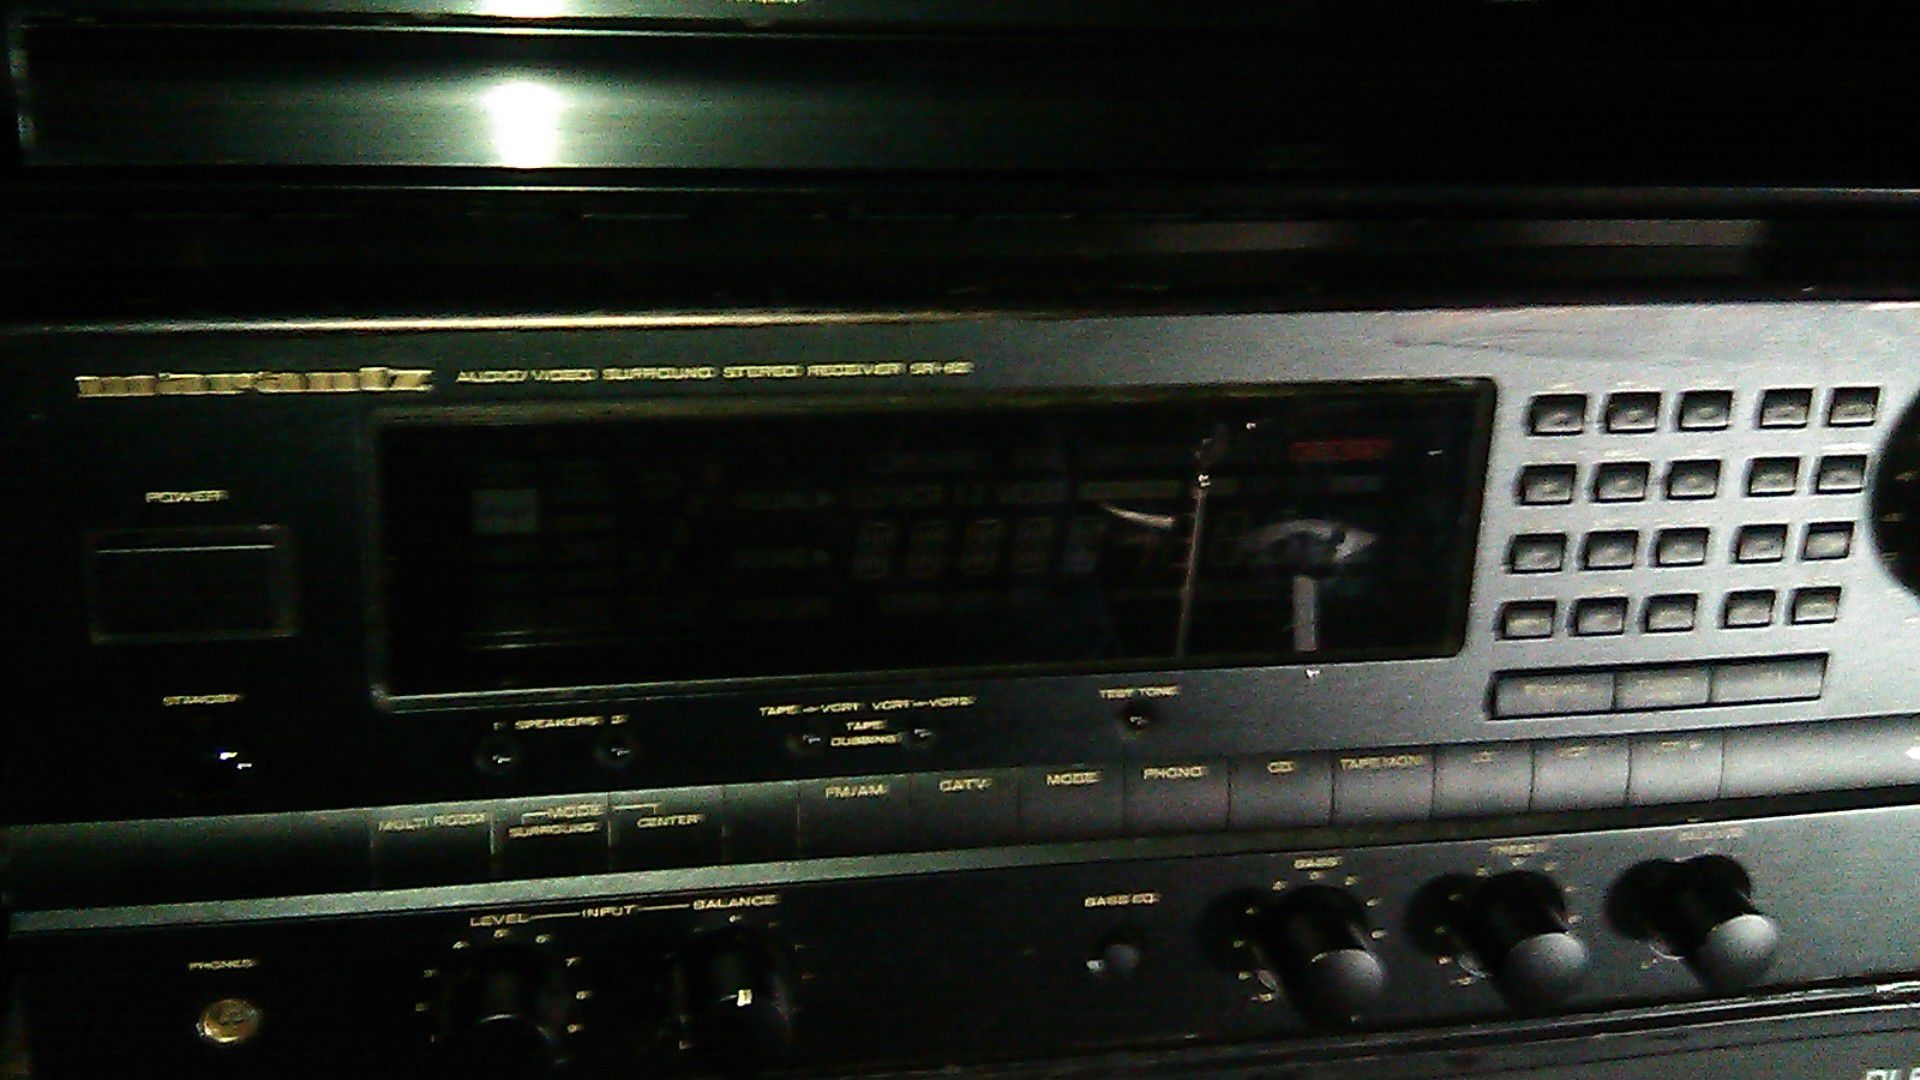 Marantz Audi/video surround stereo receiver sr-82